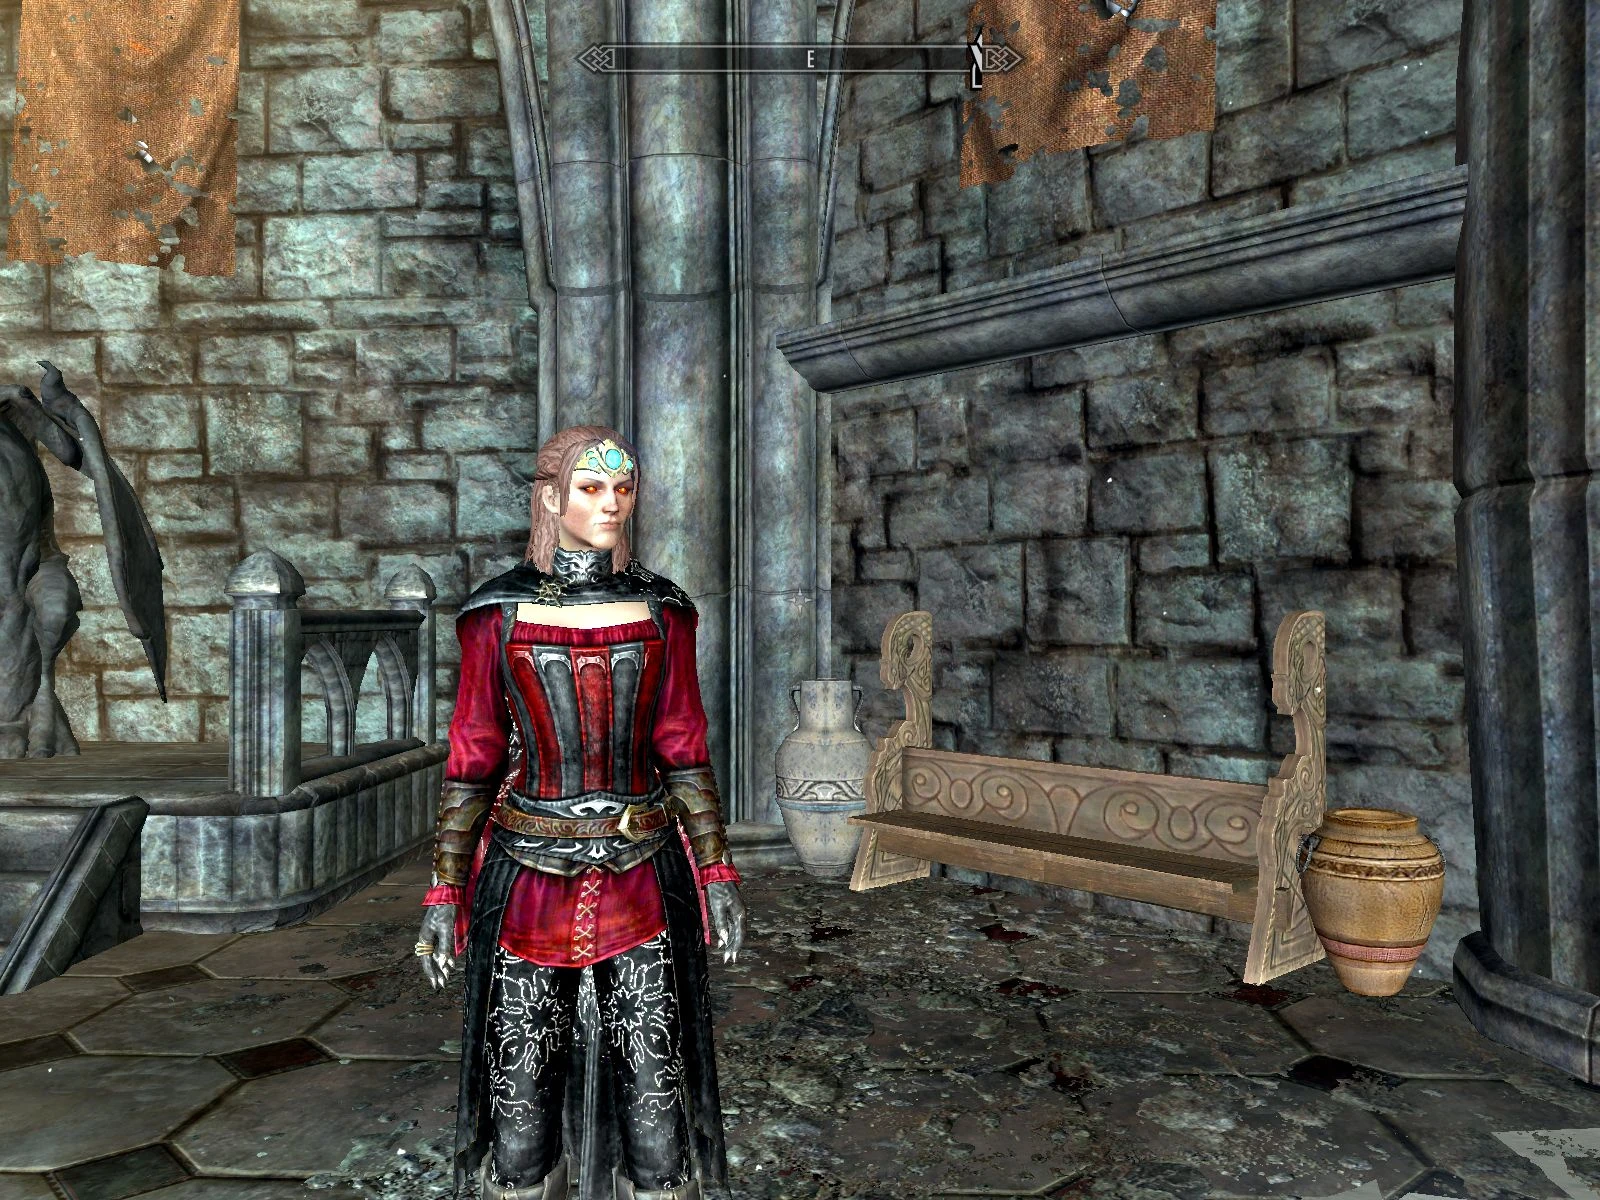 craftable vampire royal armor at skyrim nexus mods and community.